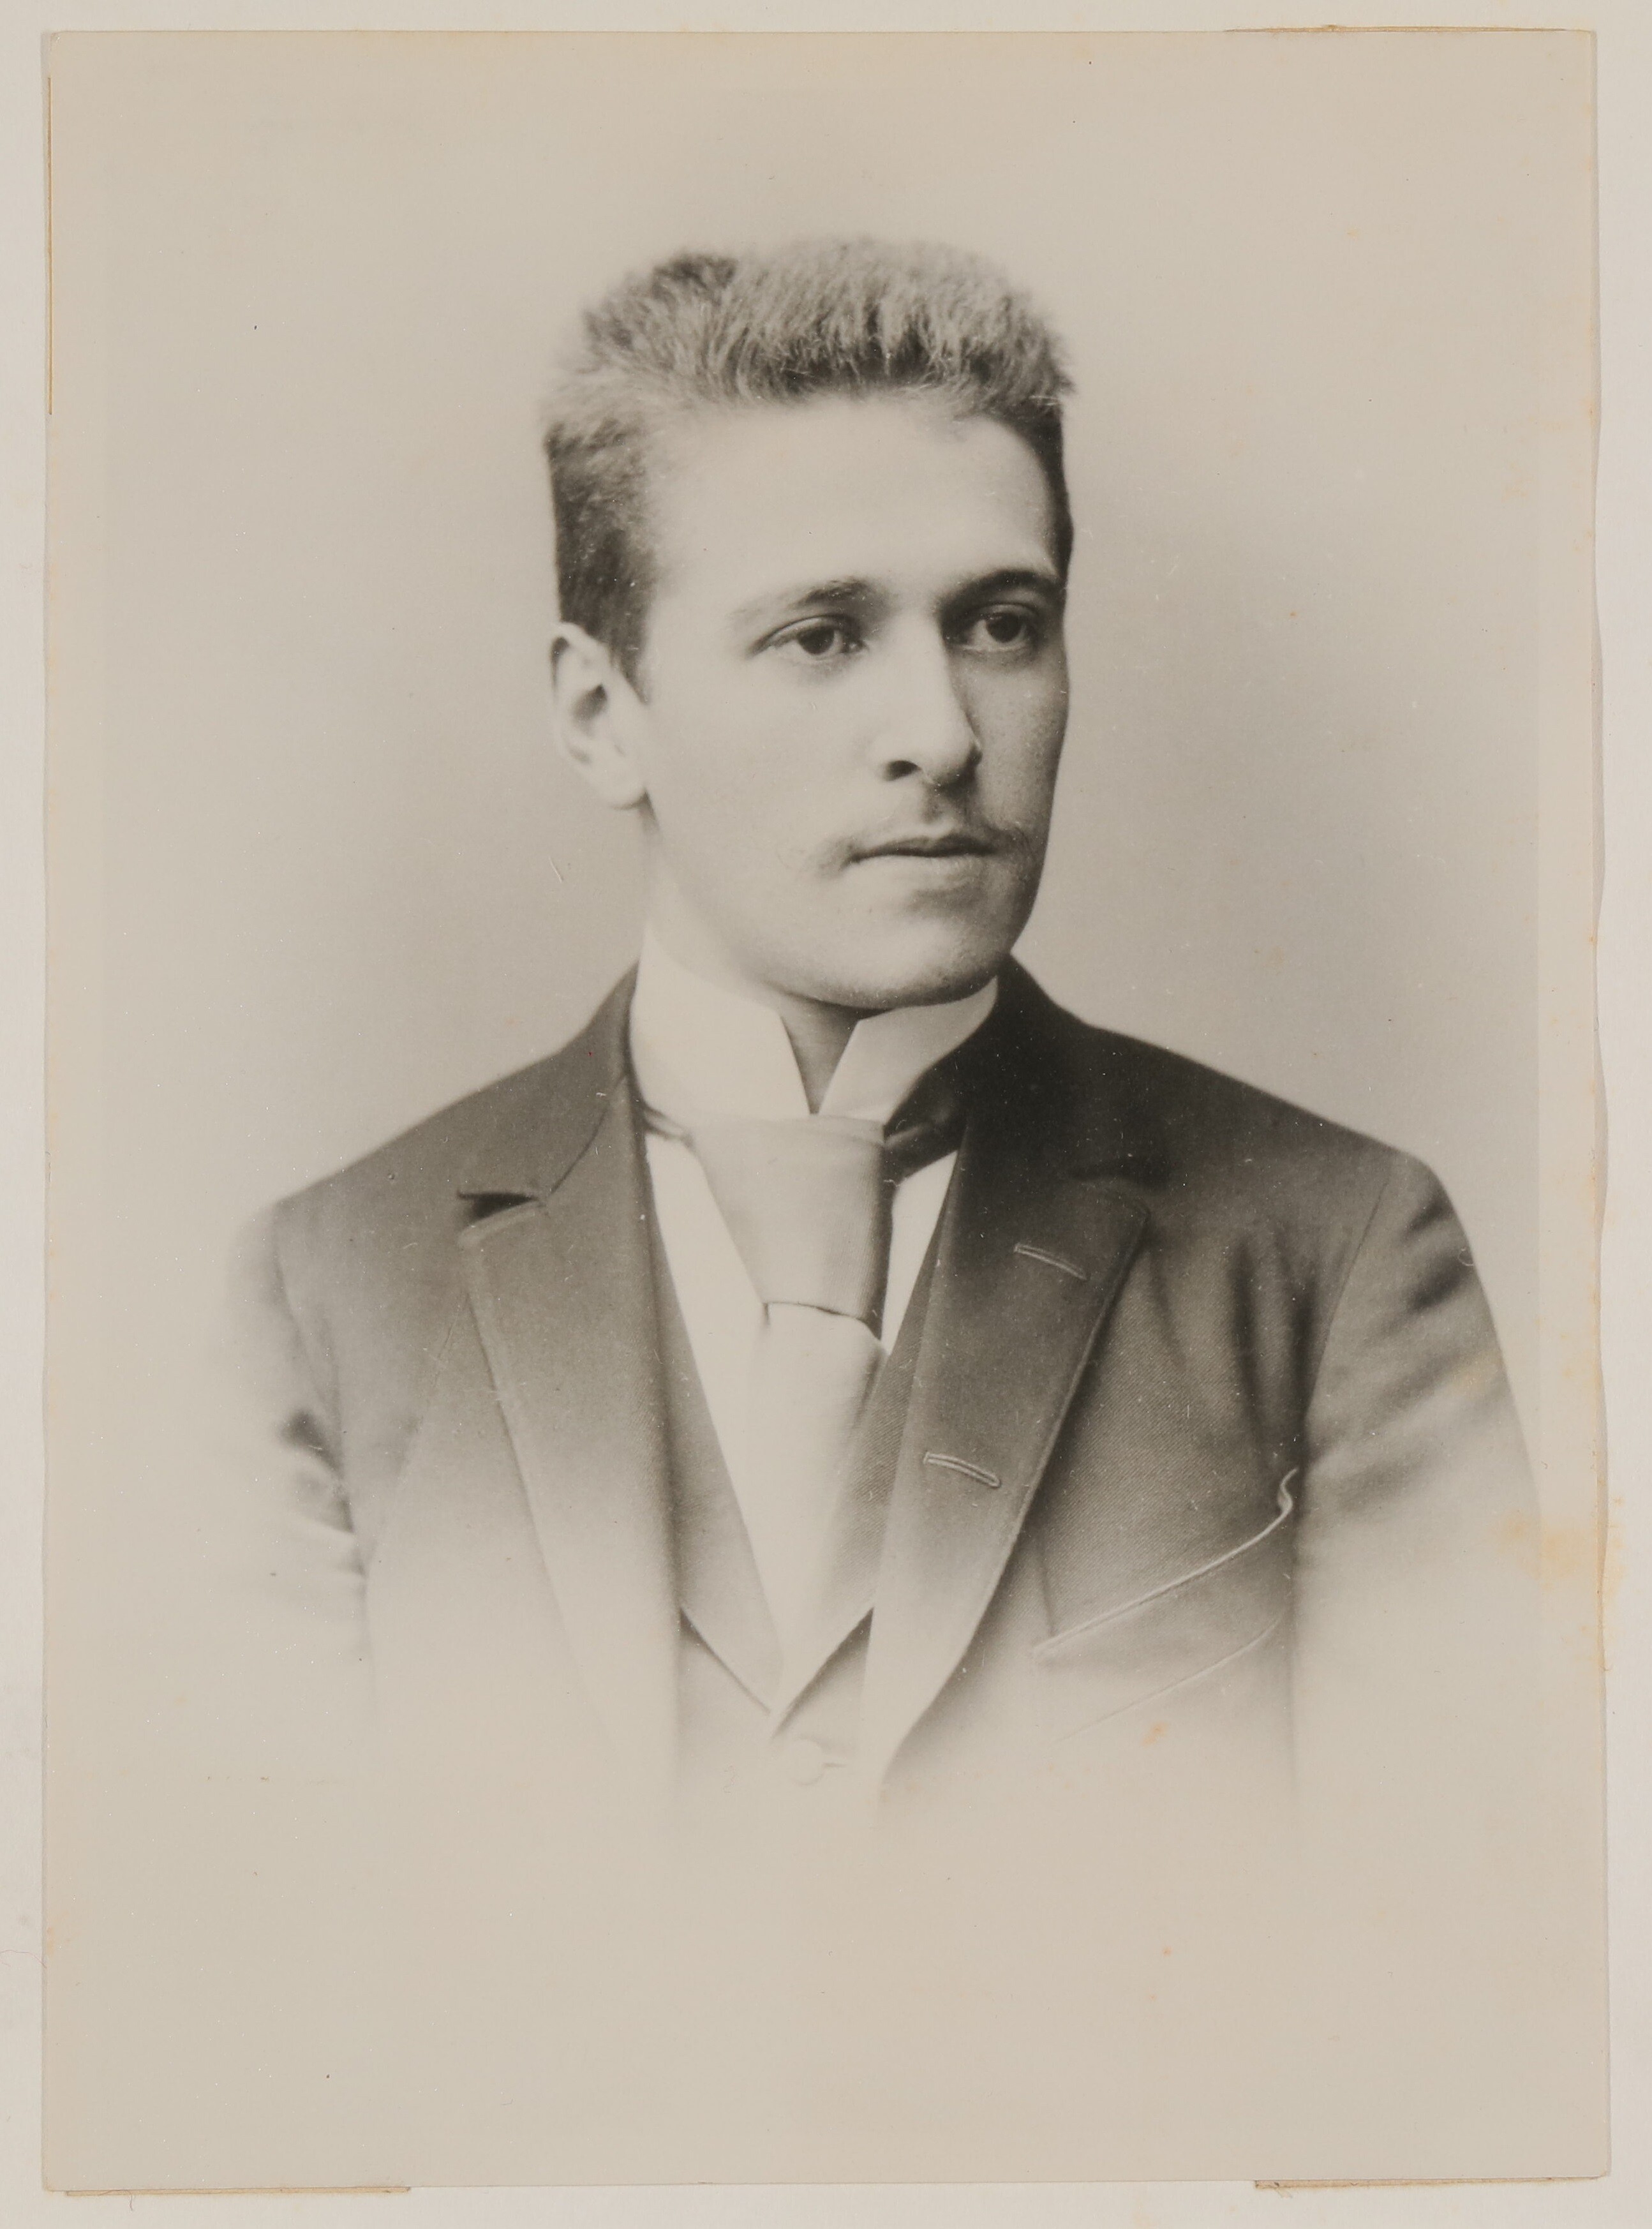 Portrait des jungen Hugo von Hofmannsthal im Halbprofil, nach rechts blickend (Freies Deutsches Hochstift / Frankfurter Goethe-Museum CC BY-NC-SA)